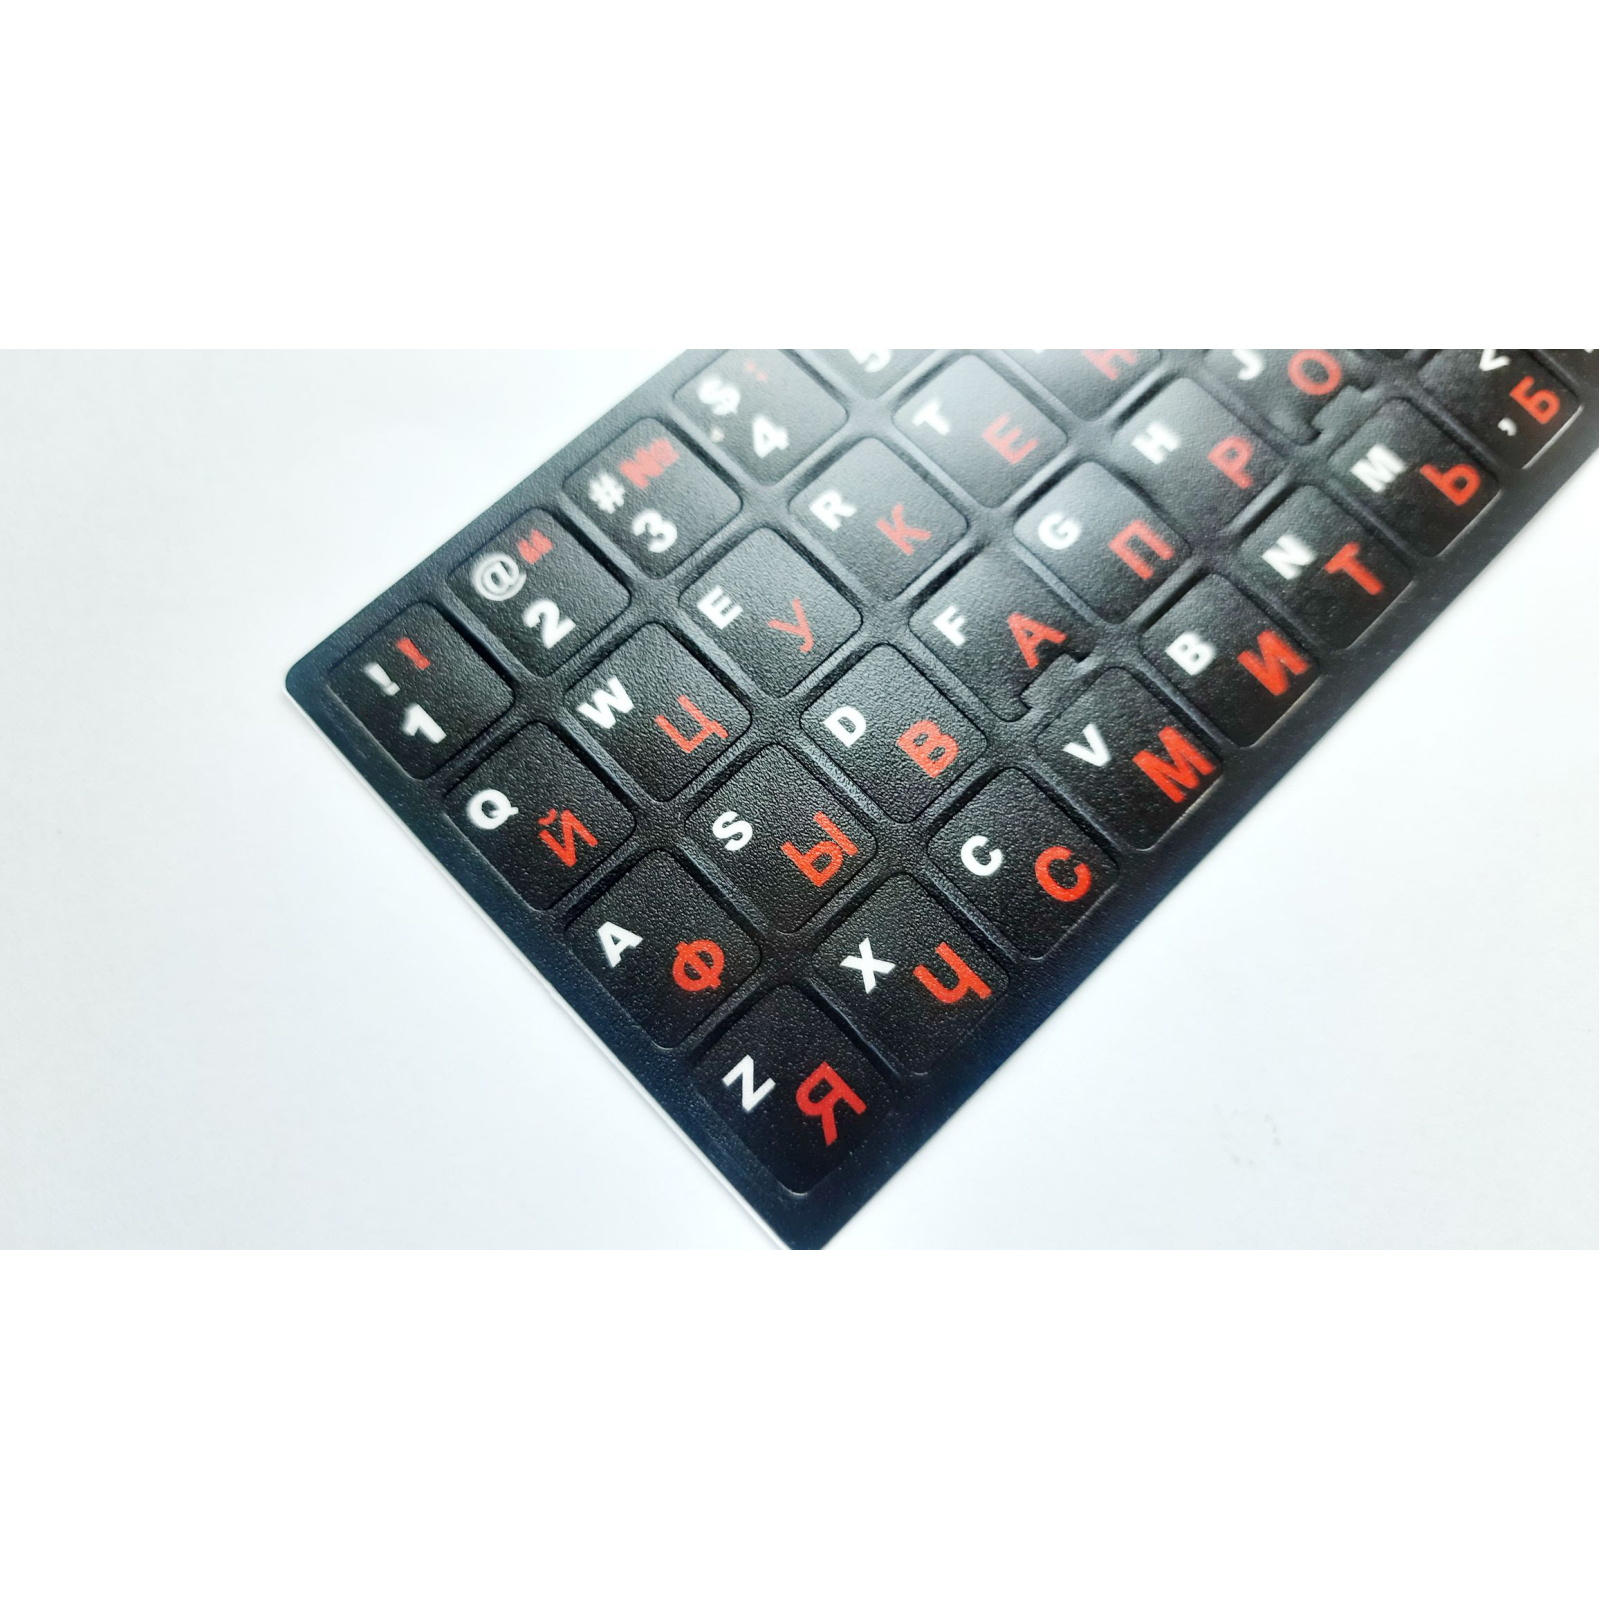 Наклейка на клавиатуру AlSoft непрозрачная EN/RU (11x13мм) черная (кирилица красная) textu (A43979) изображение 2